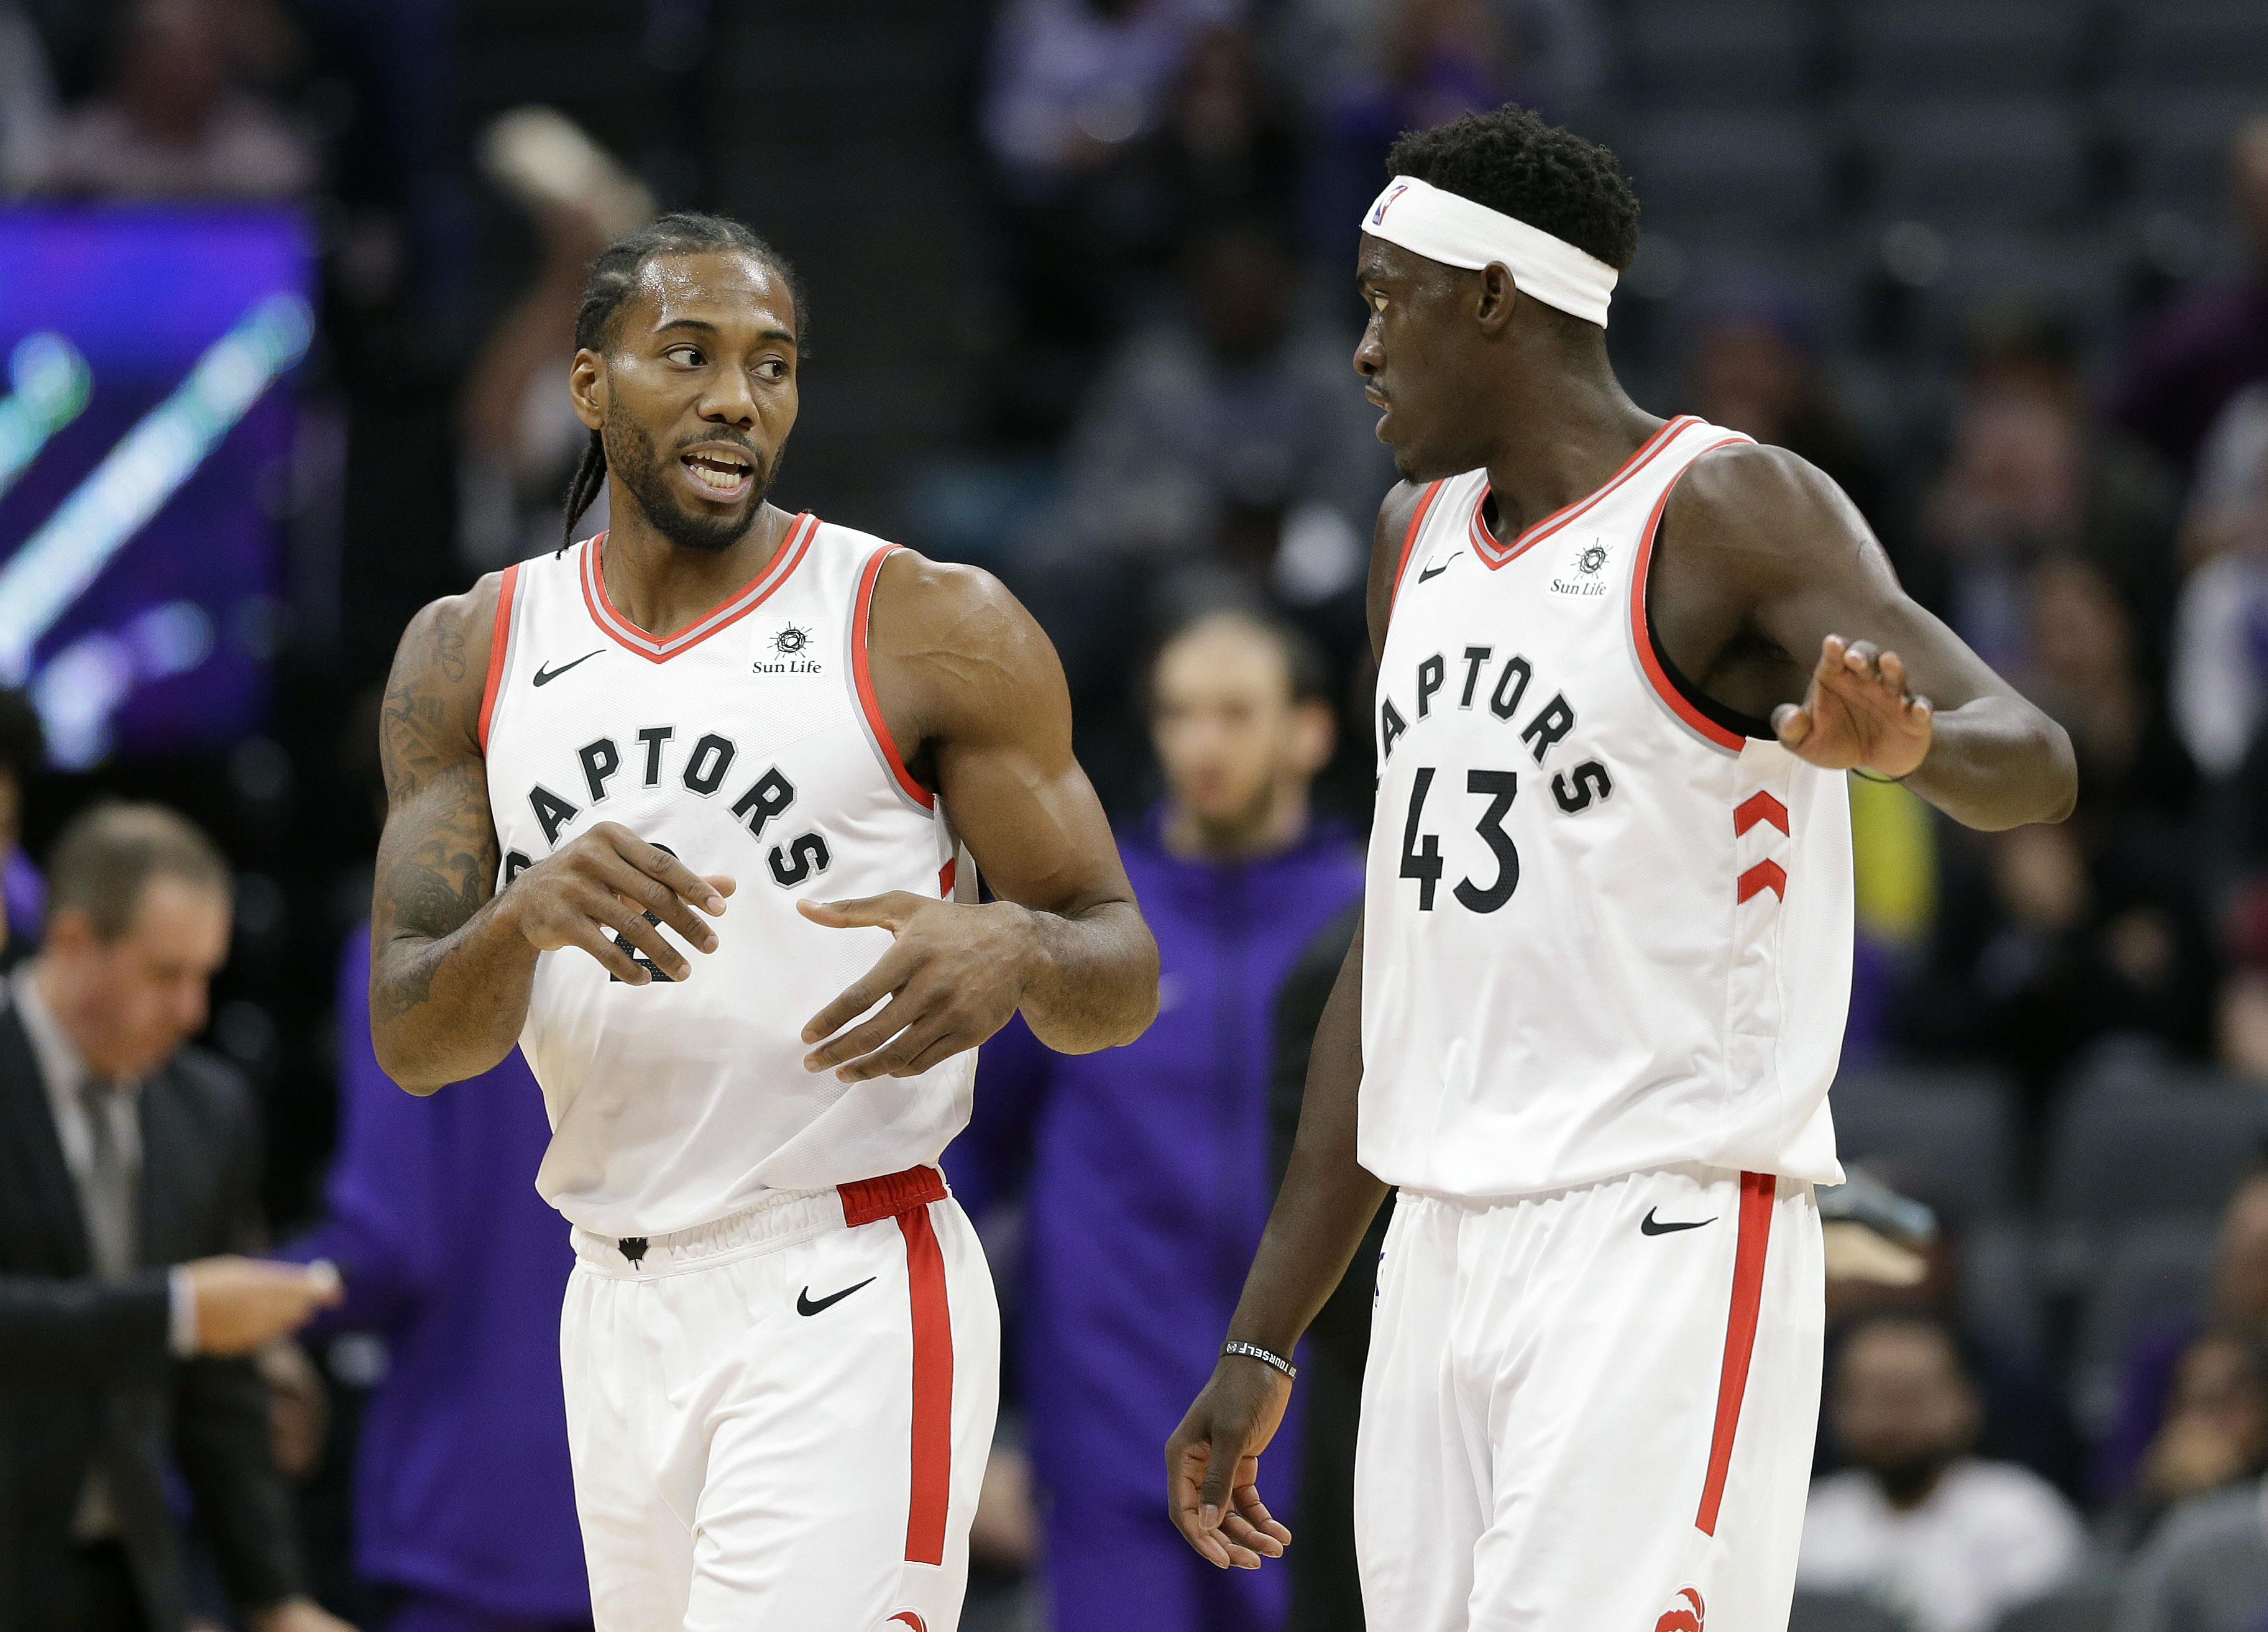 Leonard returns to help Raptors improve to NBA-best 11-1